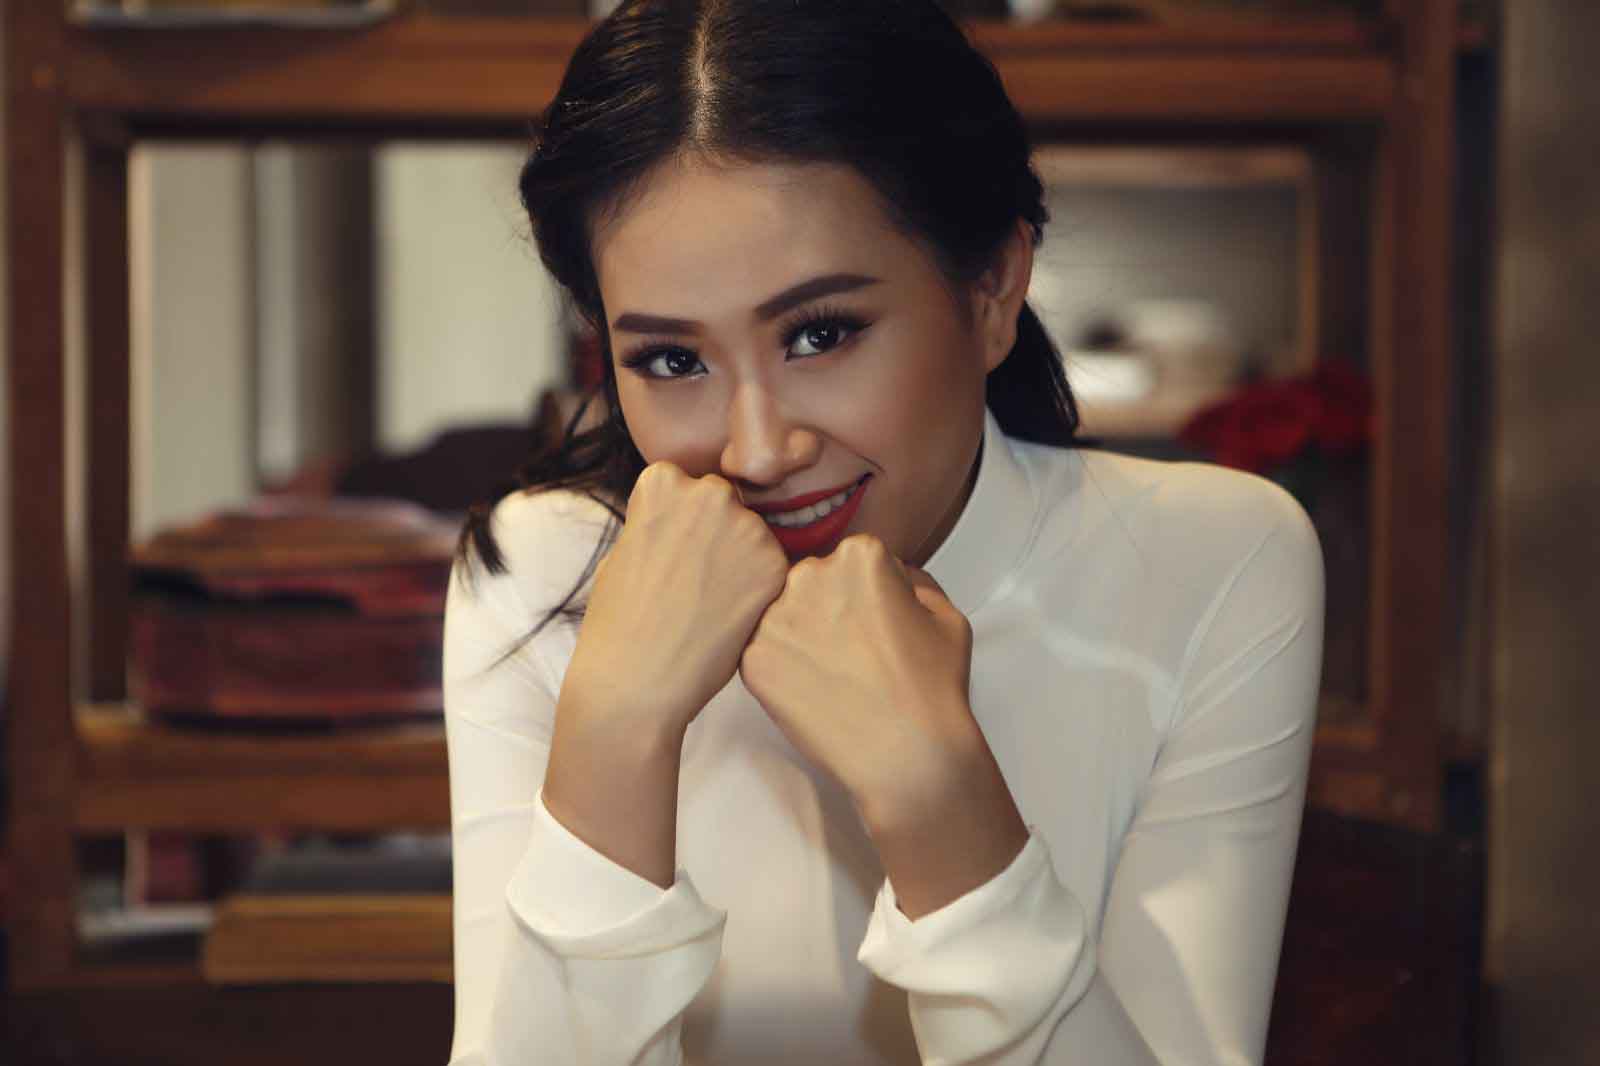 Yêu áo dài như Miss Photo 2017 - Trần Đình Thạch Thảo